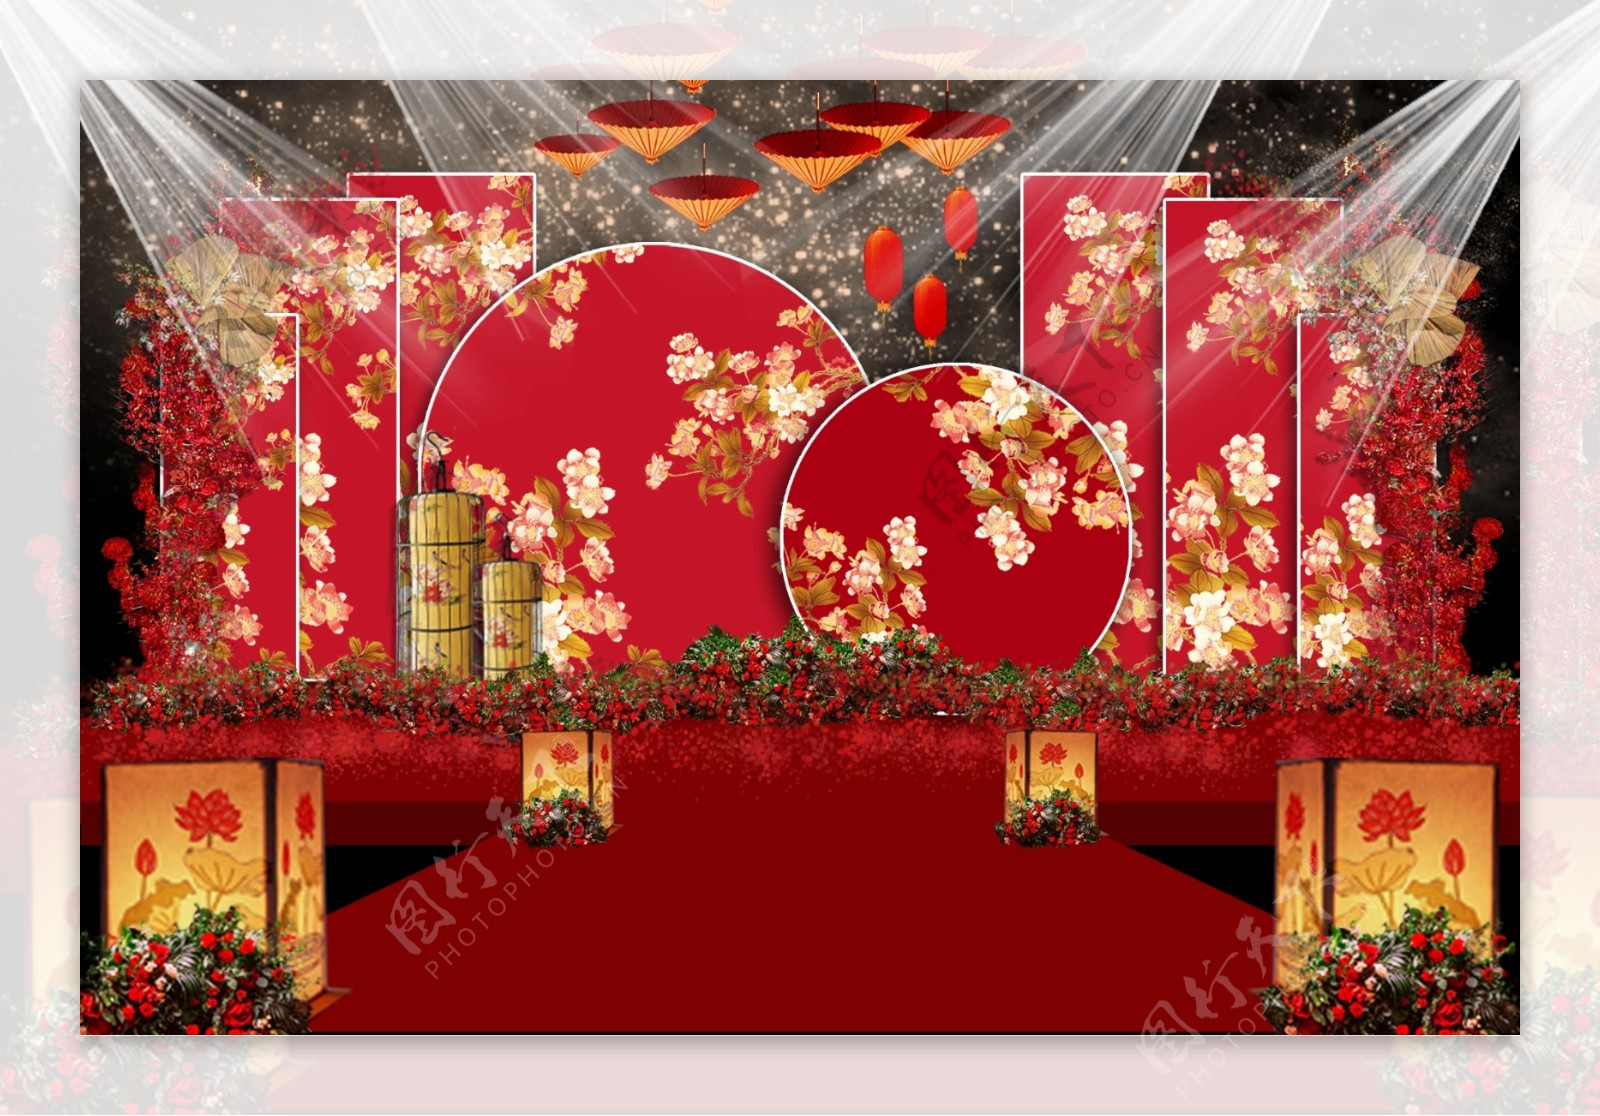 中国红中式婚礼效果图